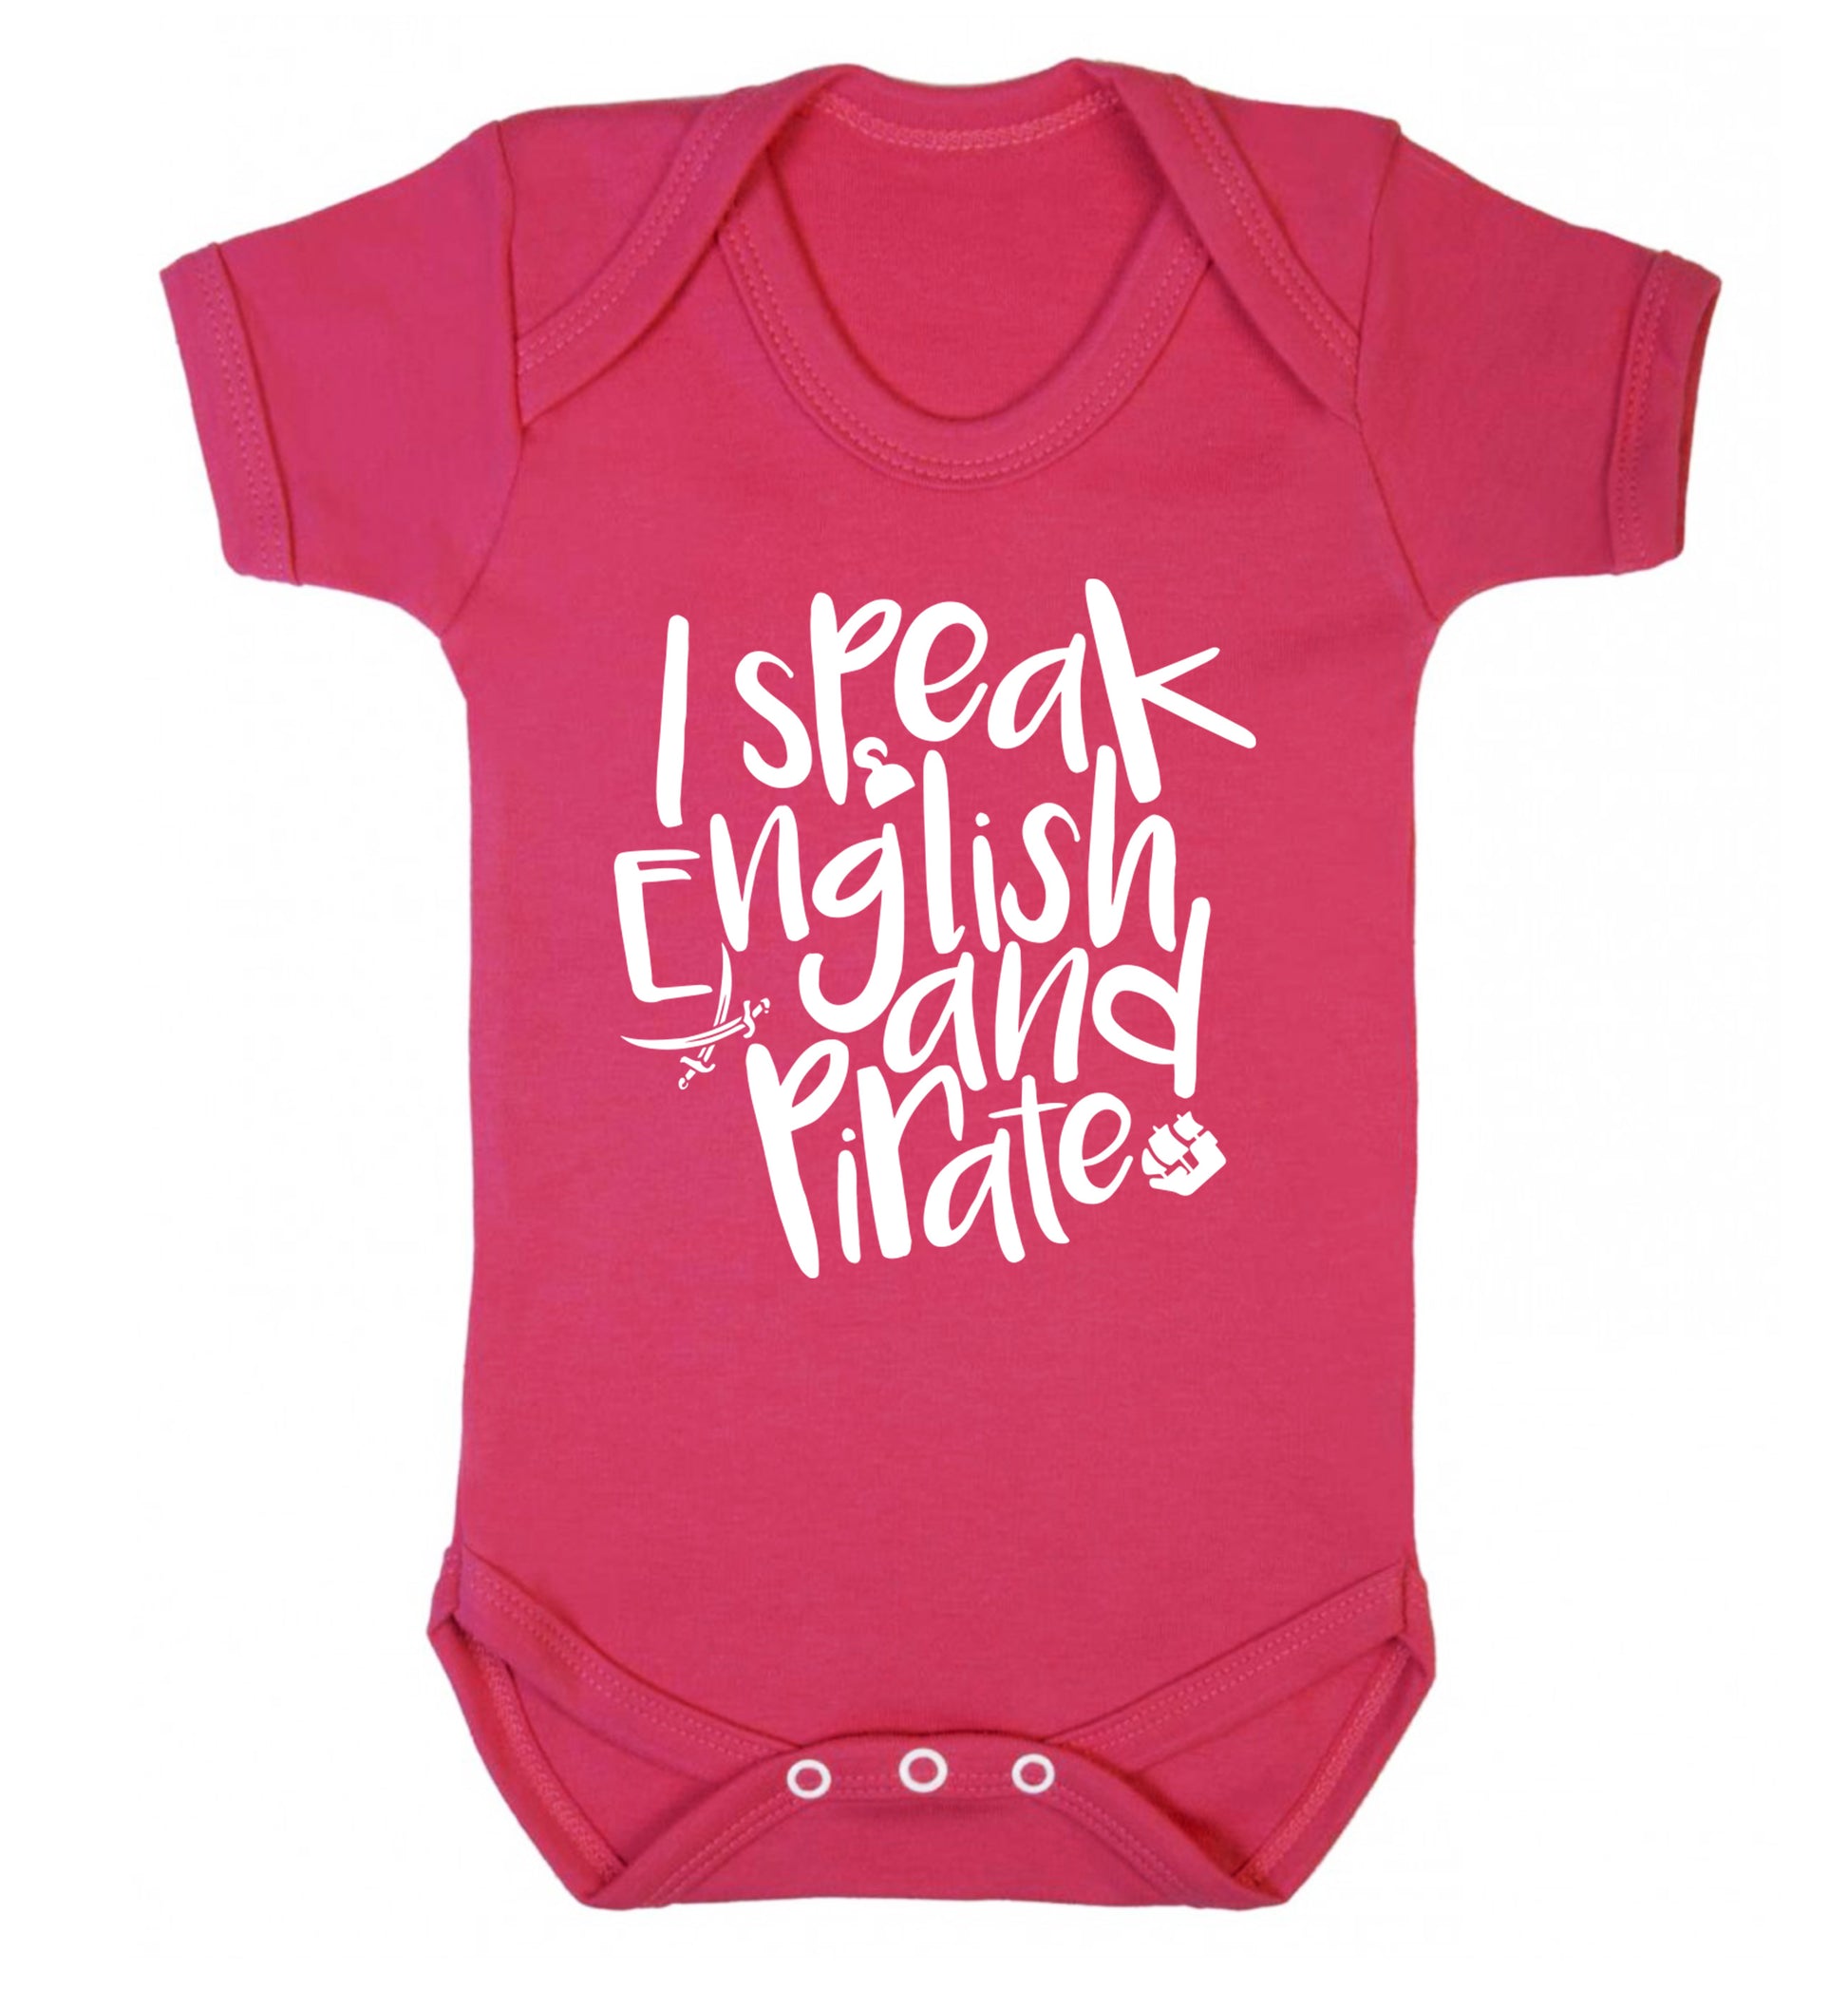 I speak English and pirate Baby Vest dark pink 18-24 months